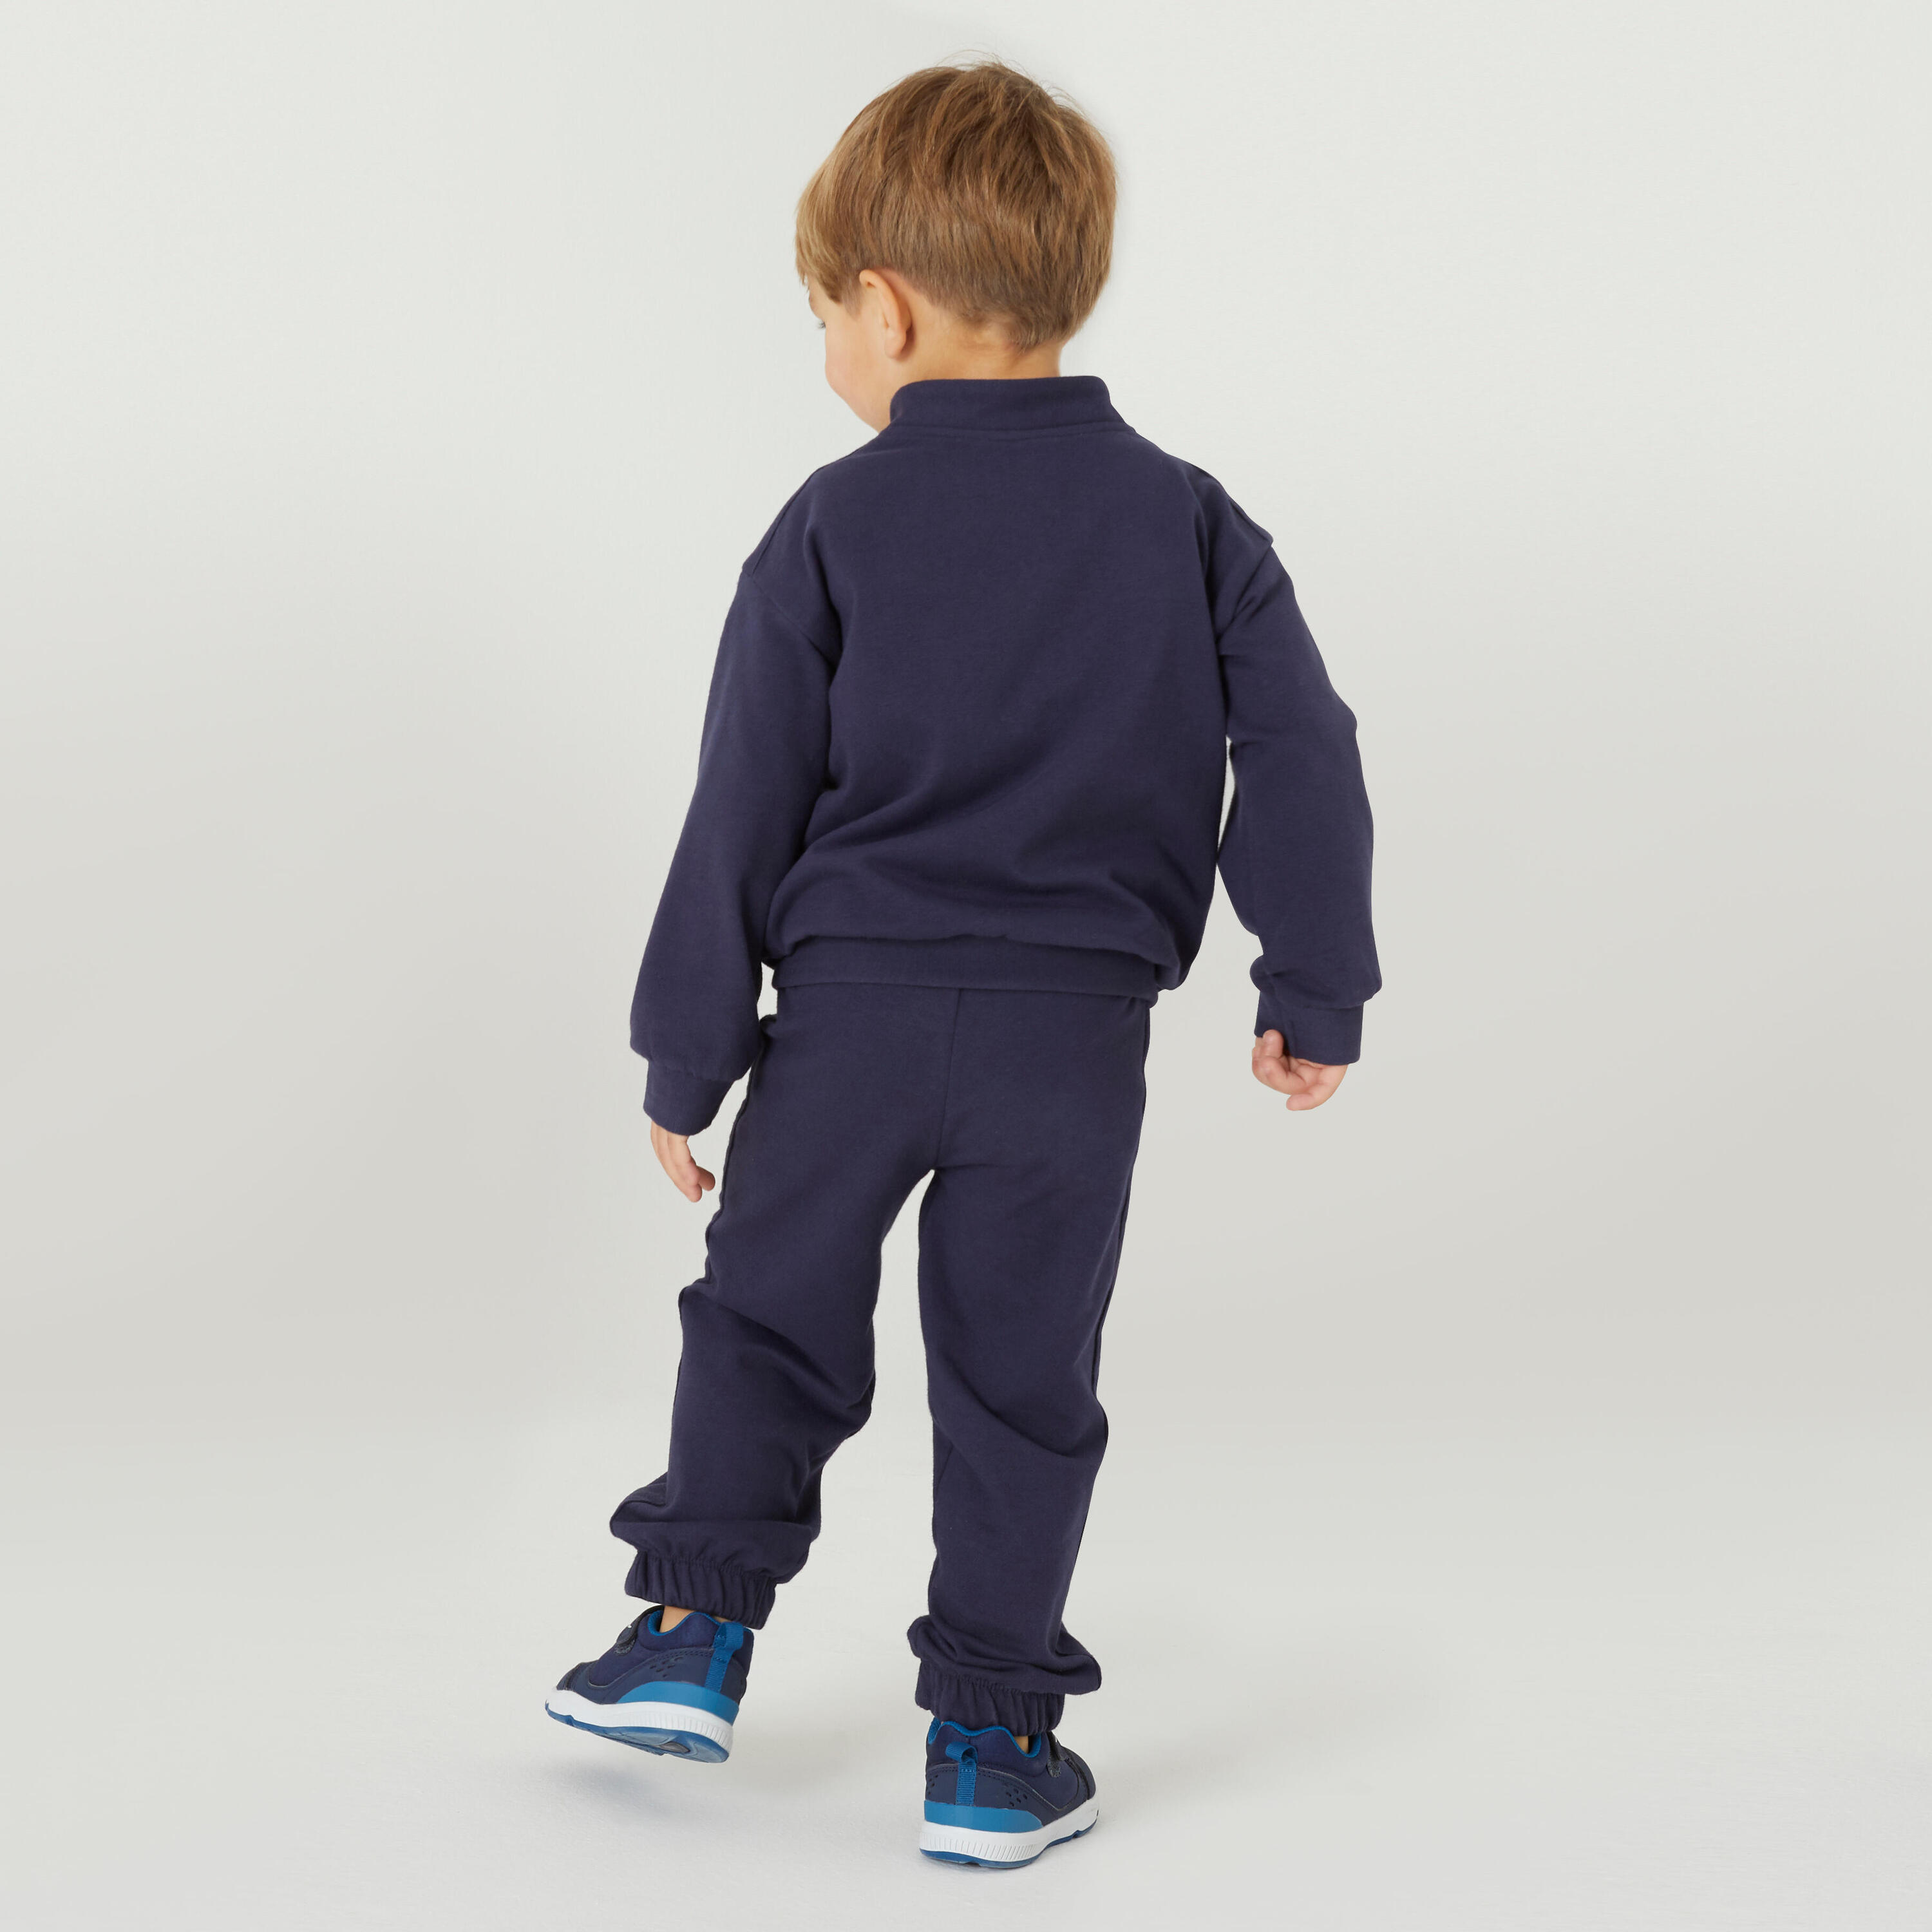 Kids' Warm Regular-Fit Tracksuit Basic - Navy Blue 5/9